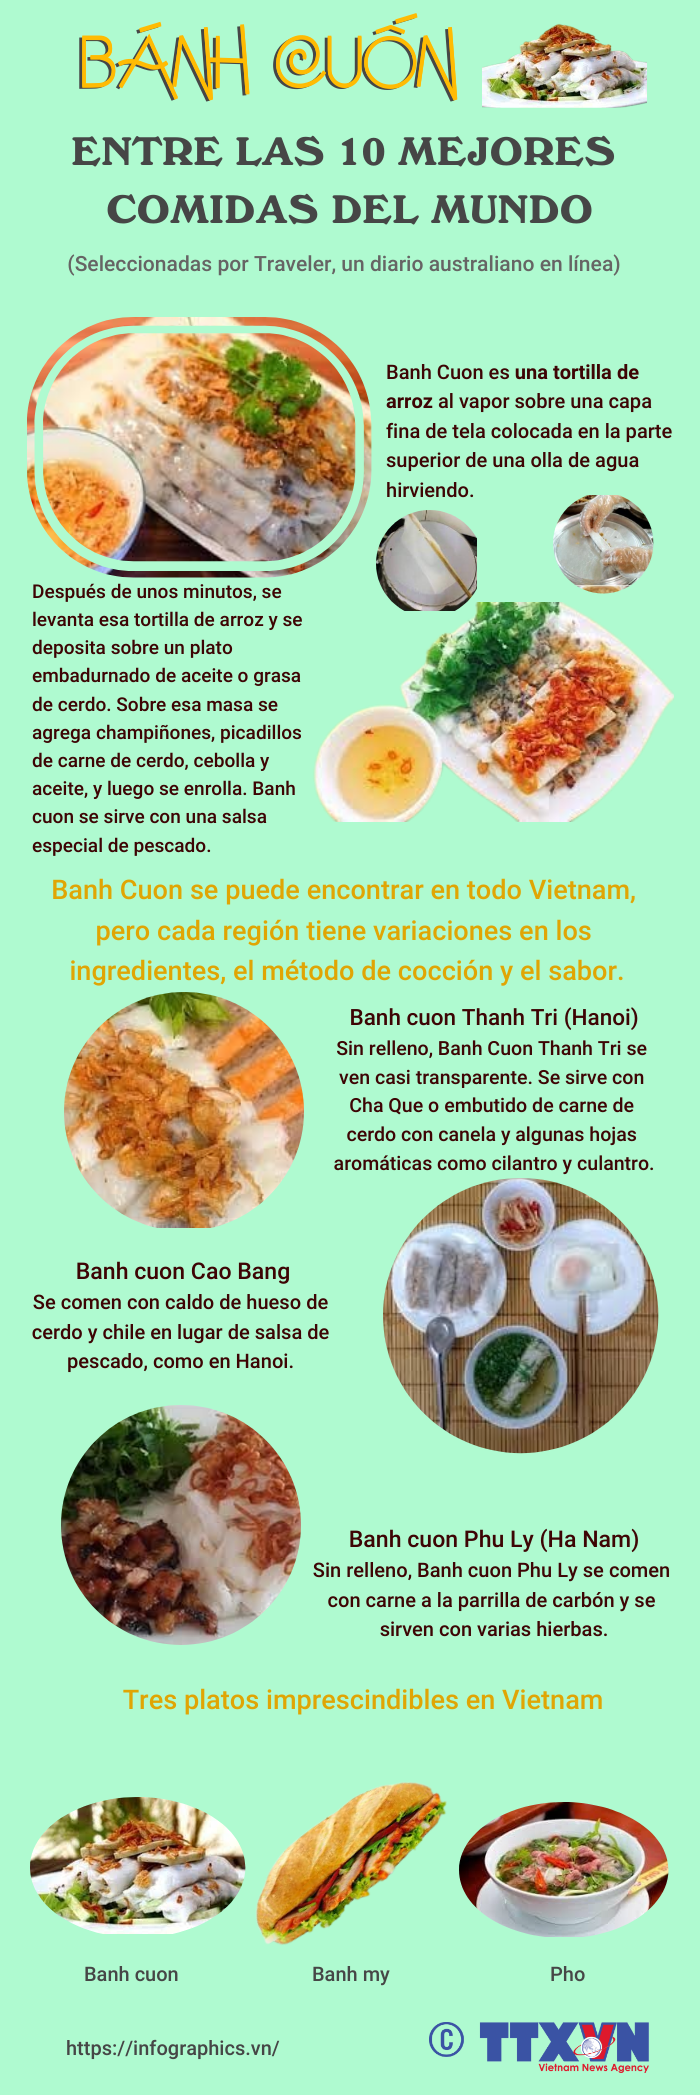 Banh cuon entre las 10 mejores comidas del mundo hinh anh 1